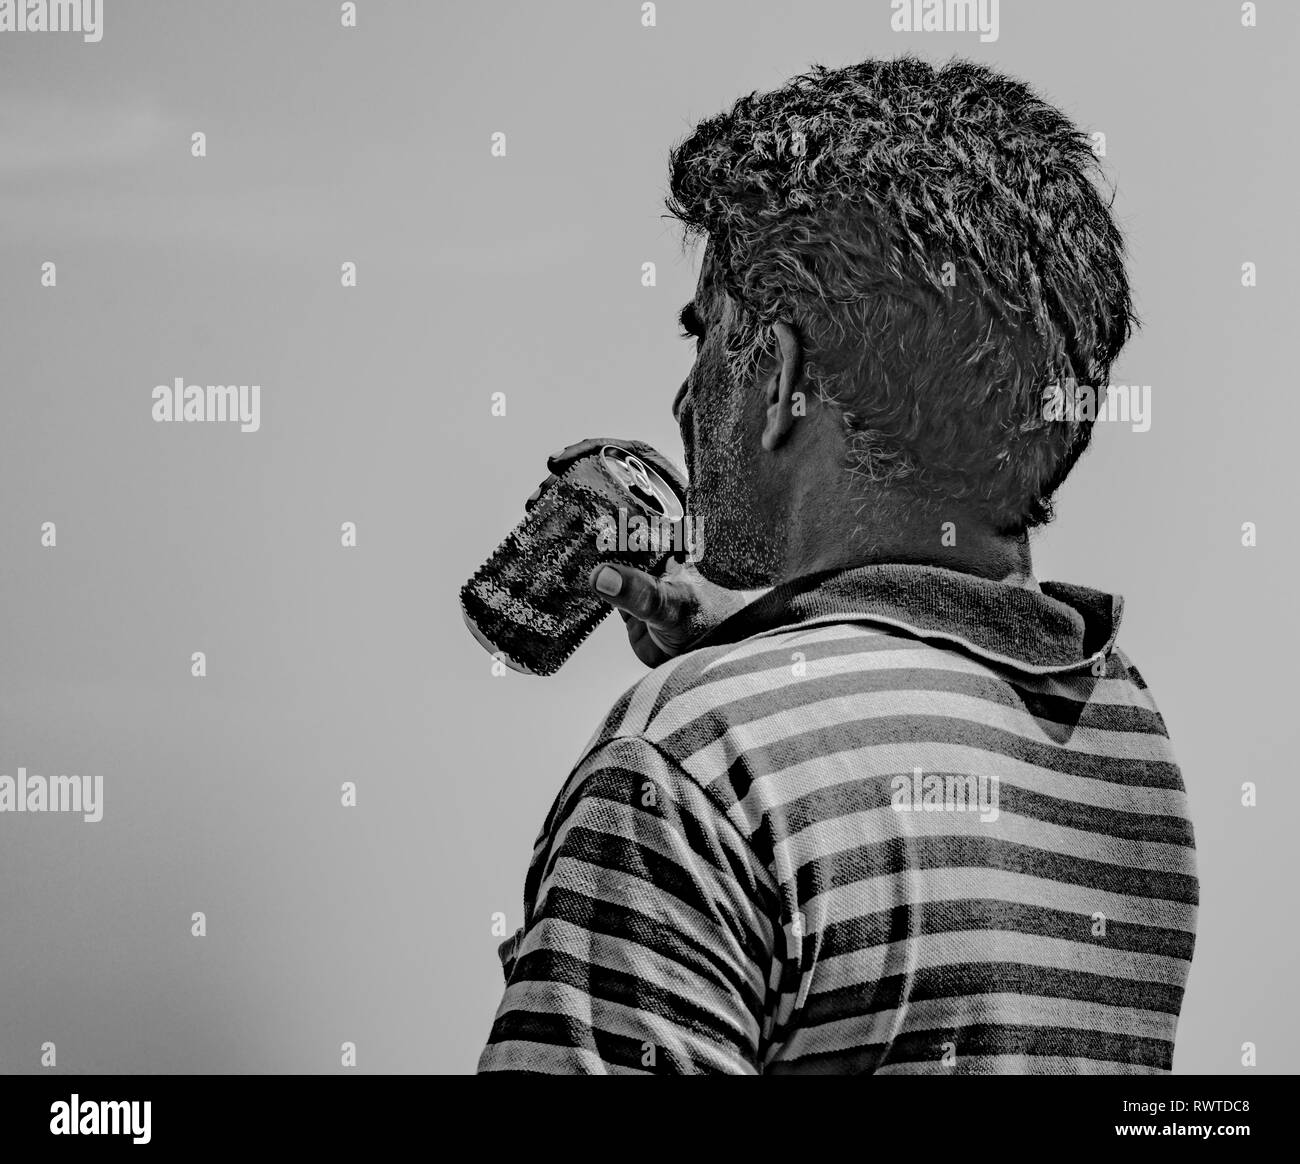 Schwarz-weiß Foto von mittleren Alter Mann, der gestreifte T-Shirt und Durst durch das Trinken von Bier/kaltes Getränk aus Aluminium kann an heißen, sonnigen Tag Stockfoto